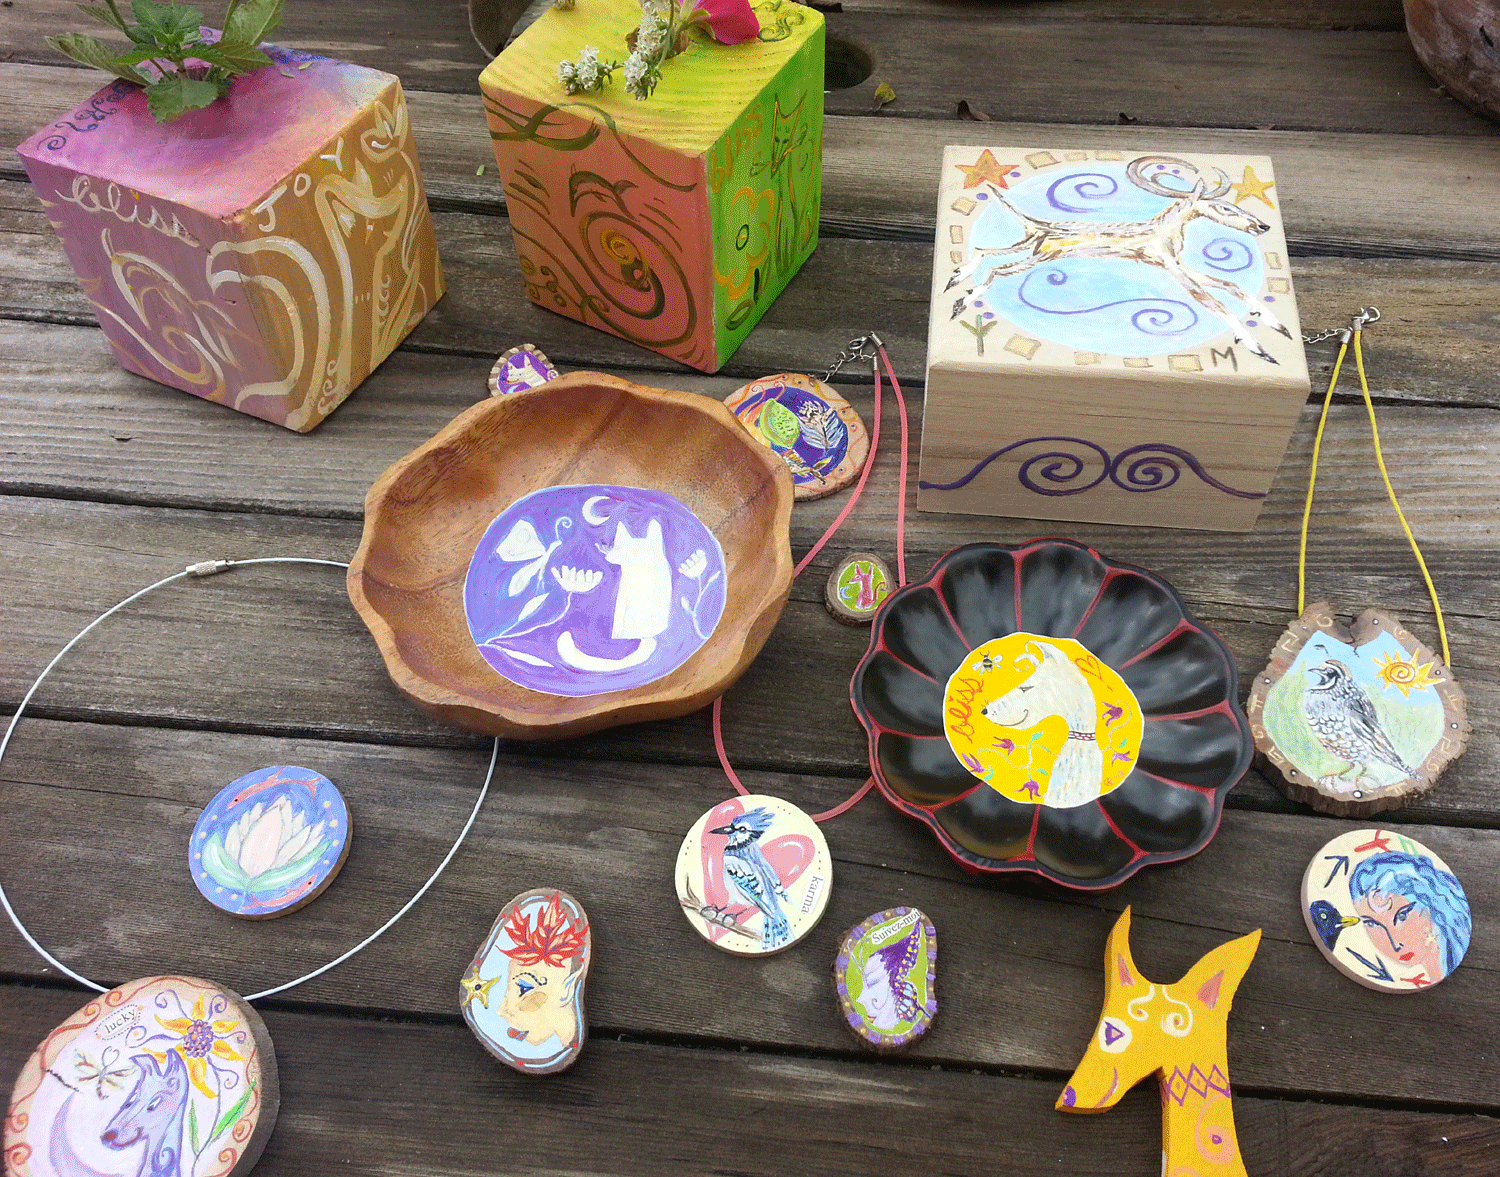 Fairy Kat Art, Ornaments, Pins, Bowls, Etc.